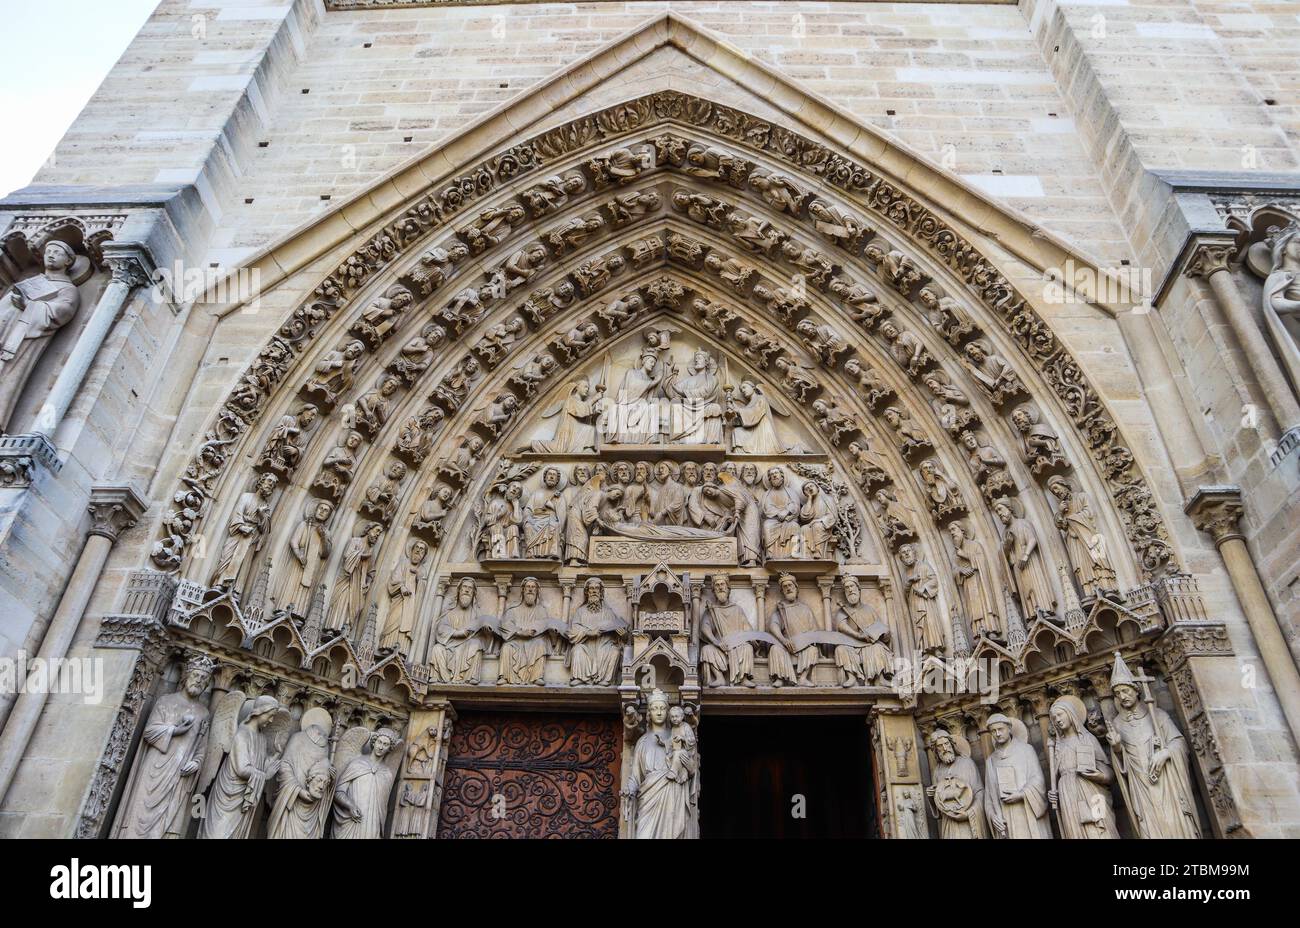 Wunderbare bildhauerischen und architektonischen Details der Kathedrale Notre Dame in Paris Frankreich. Vor dem Feuer. April 05, 2019 Stockfoto